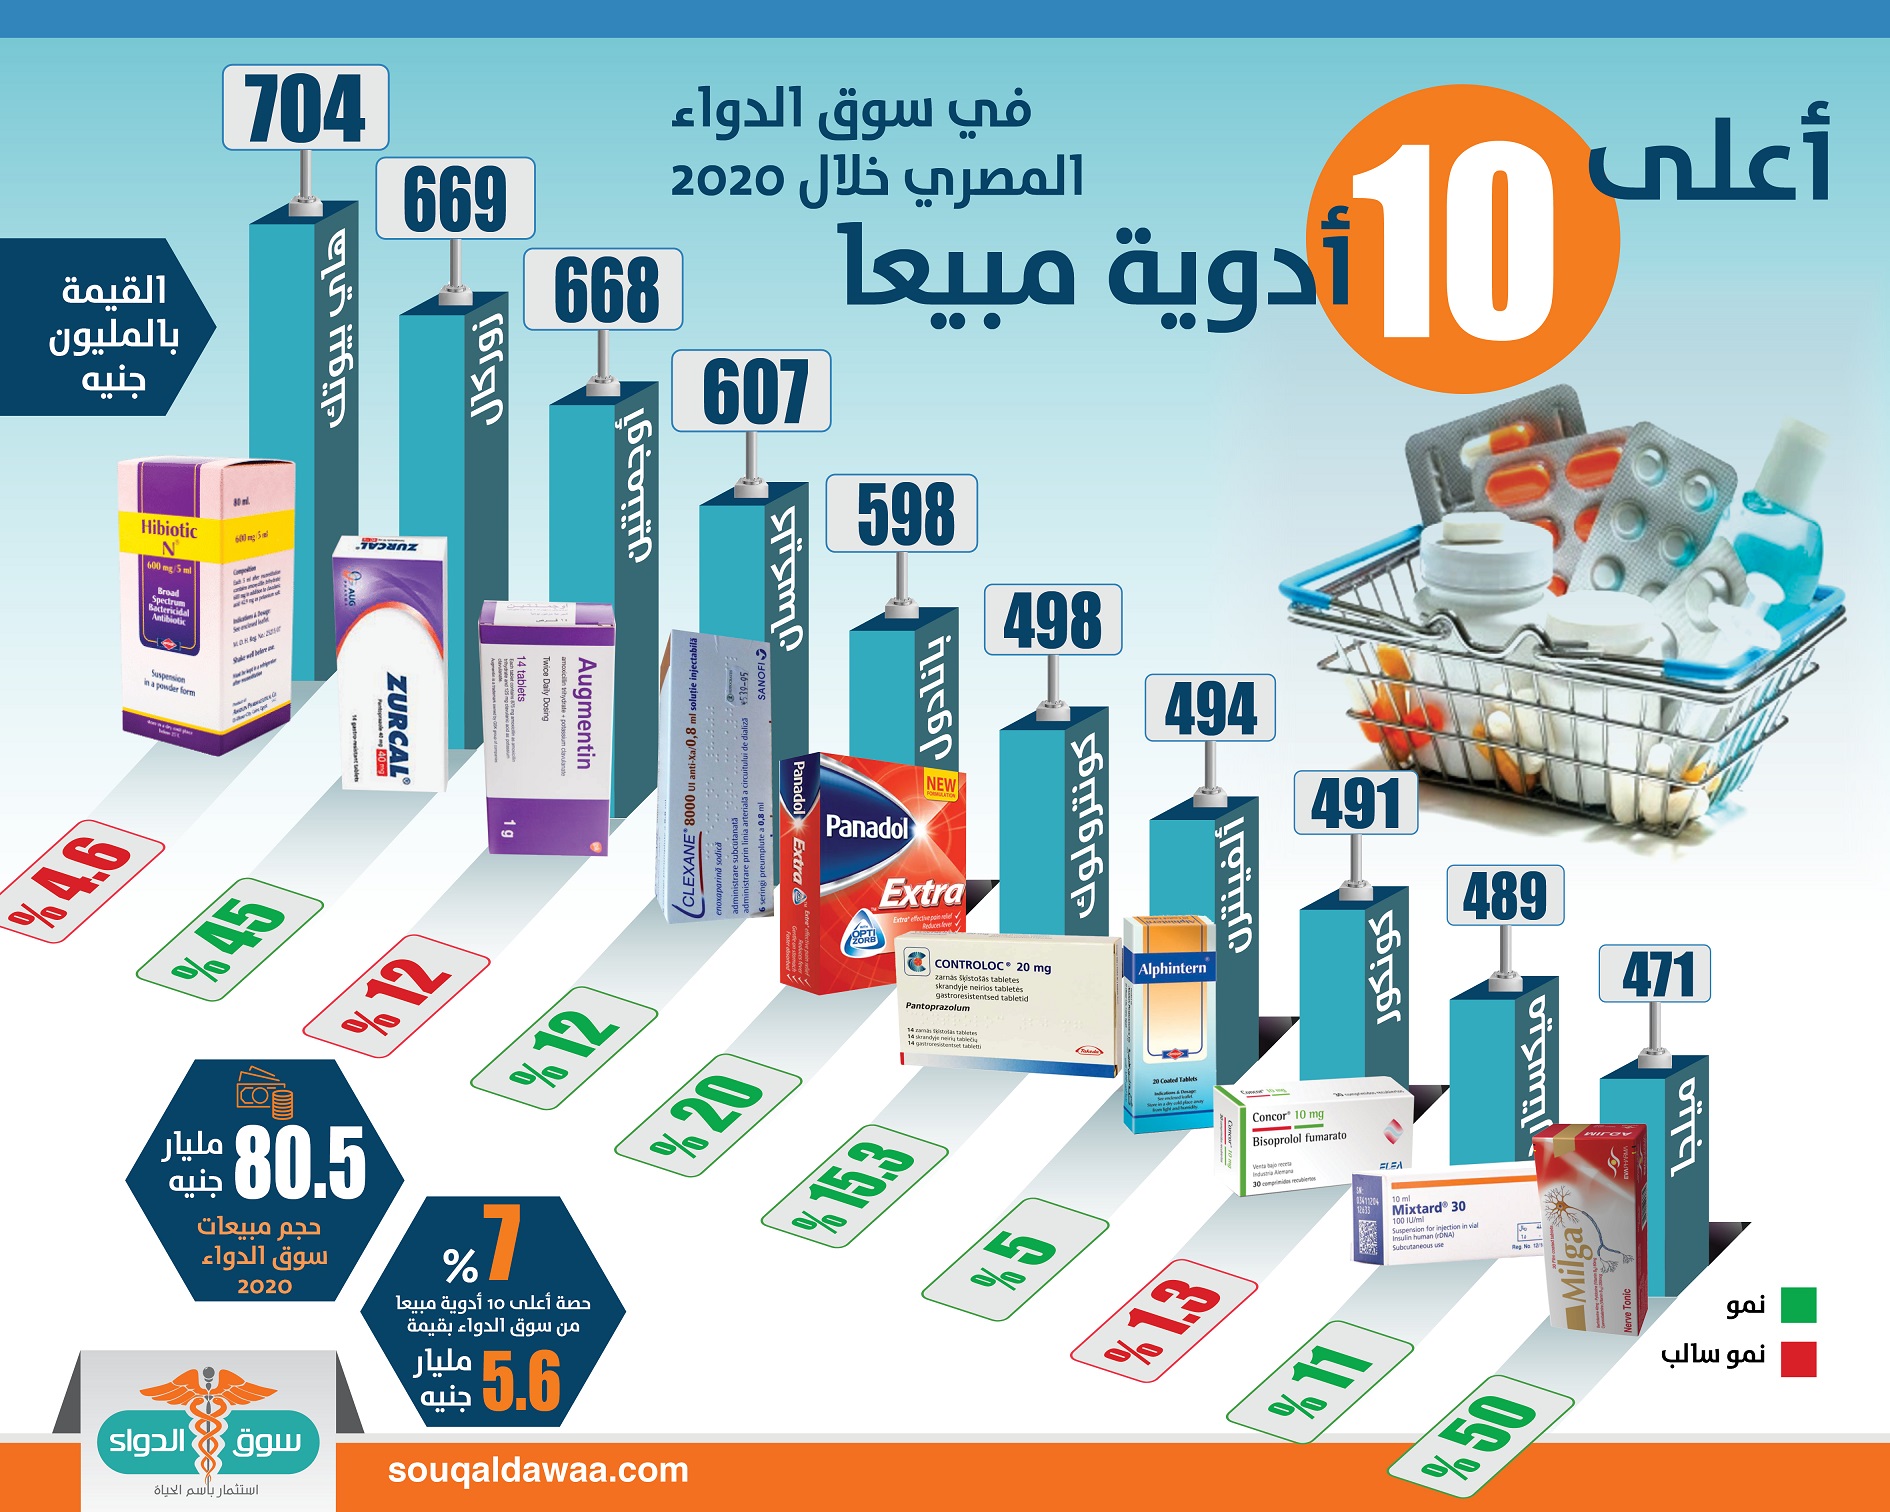 أعلى 10 أدوية مبيعا في سوق الدواء المصري خلال 2020